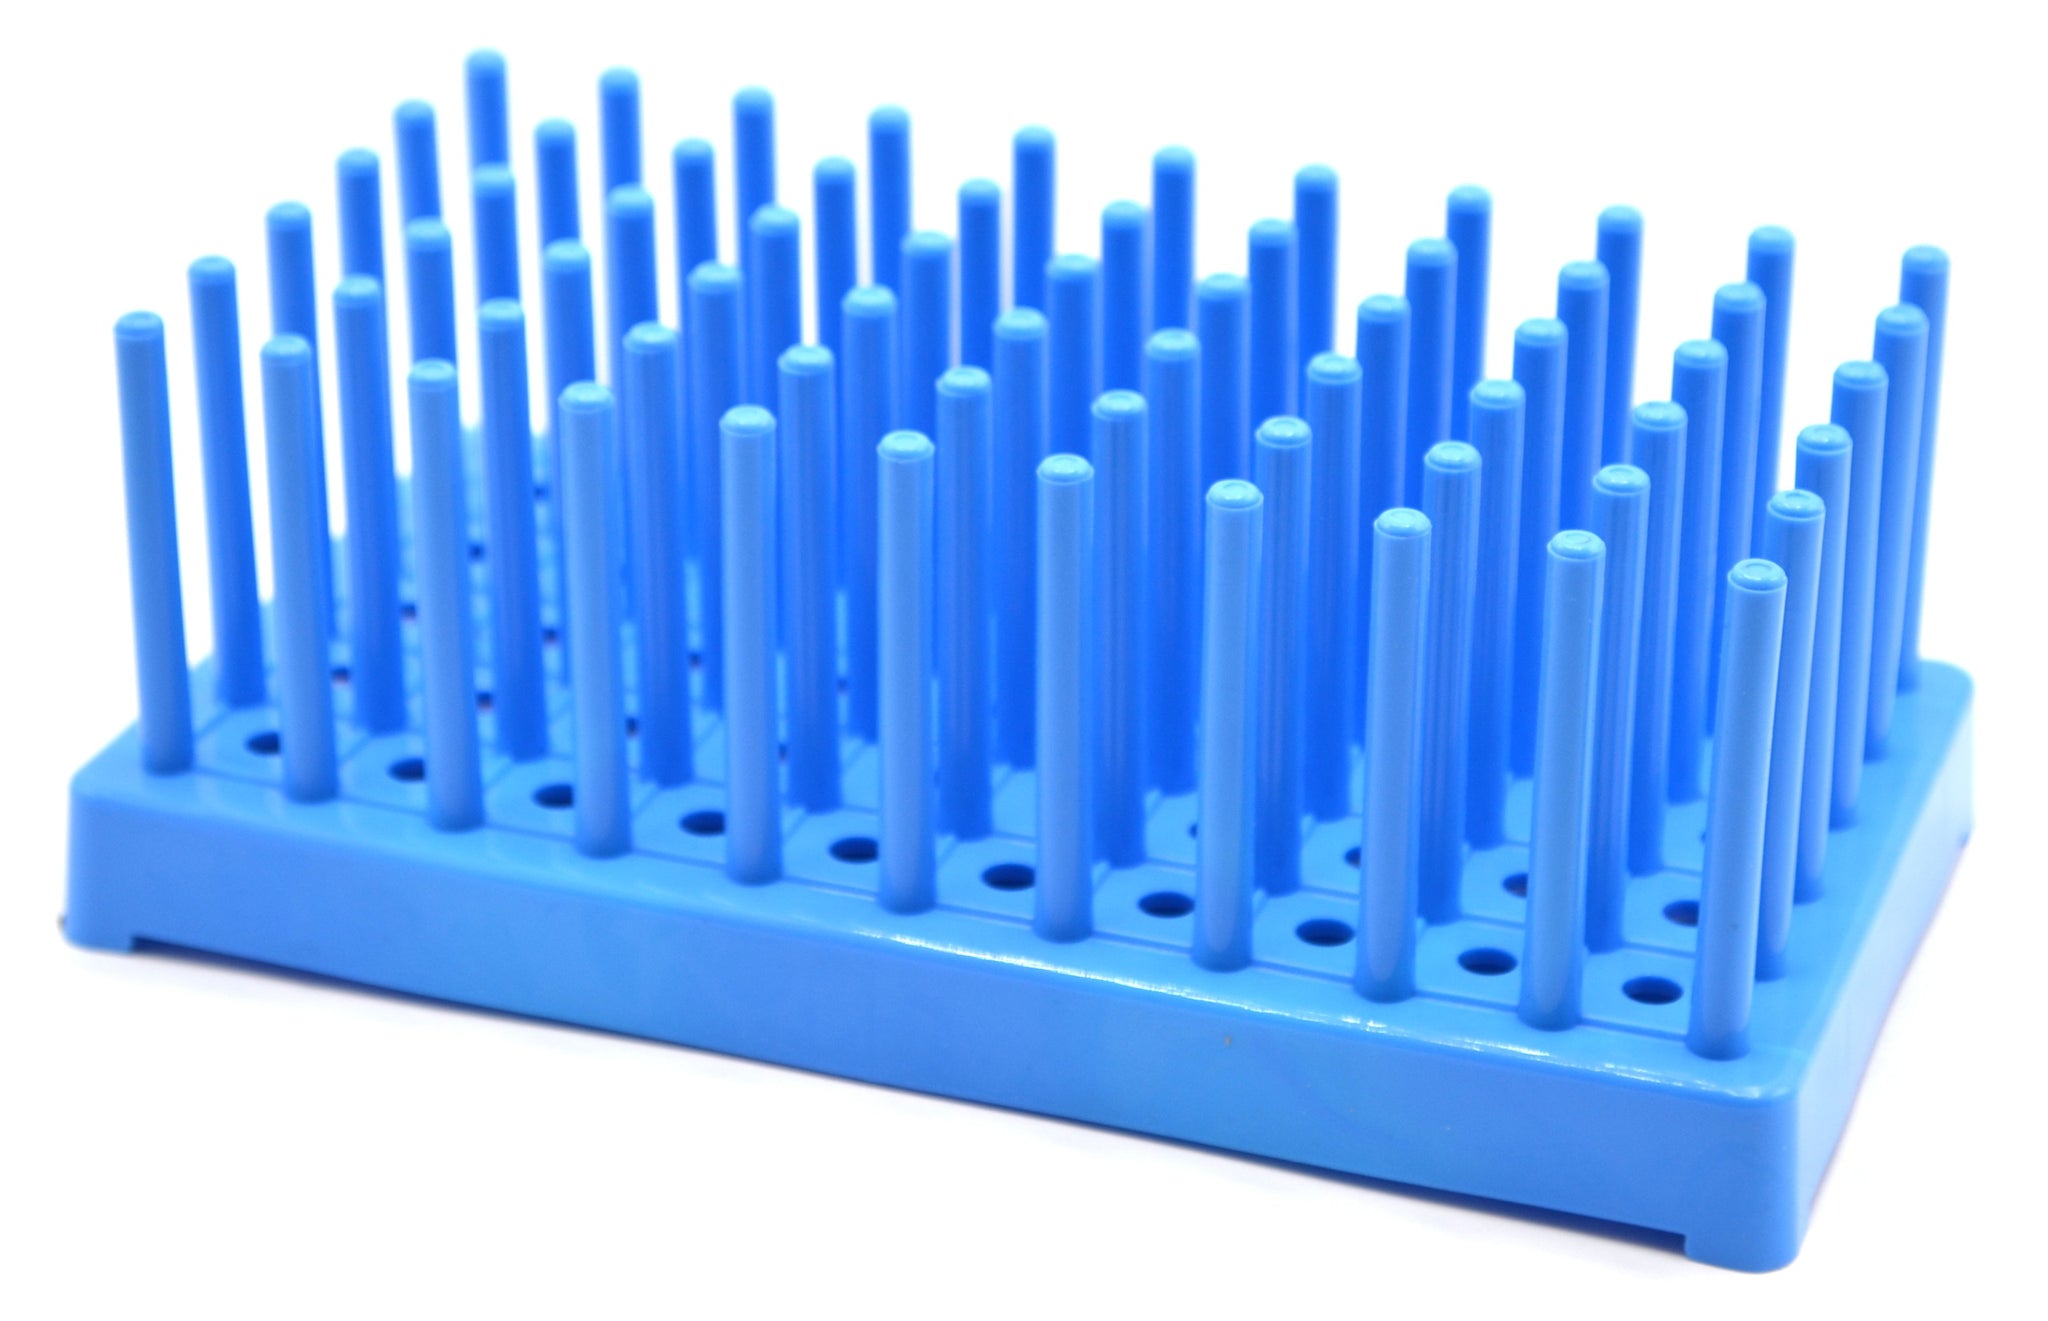 Blue Plastic Test Tube Peg Drying Rack Holds 50 16mm Test Tubes - Eisco Labs